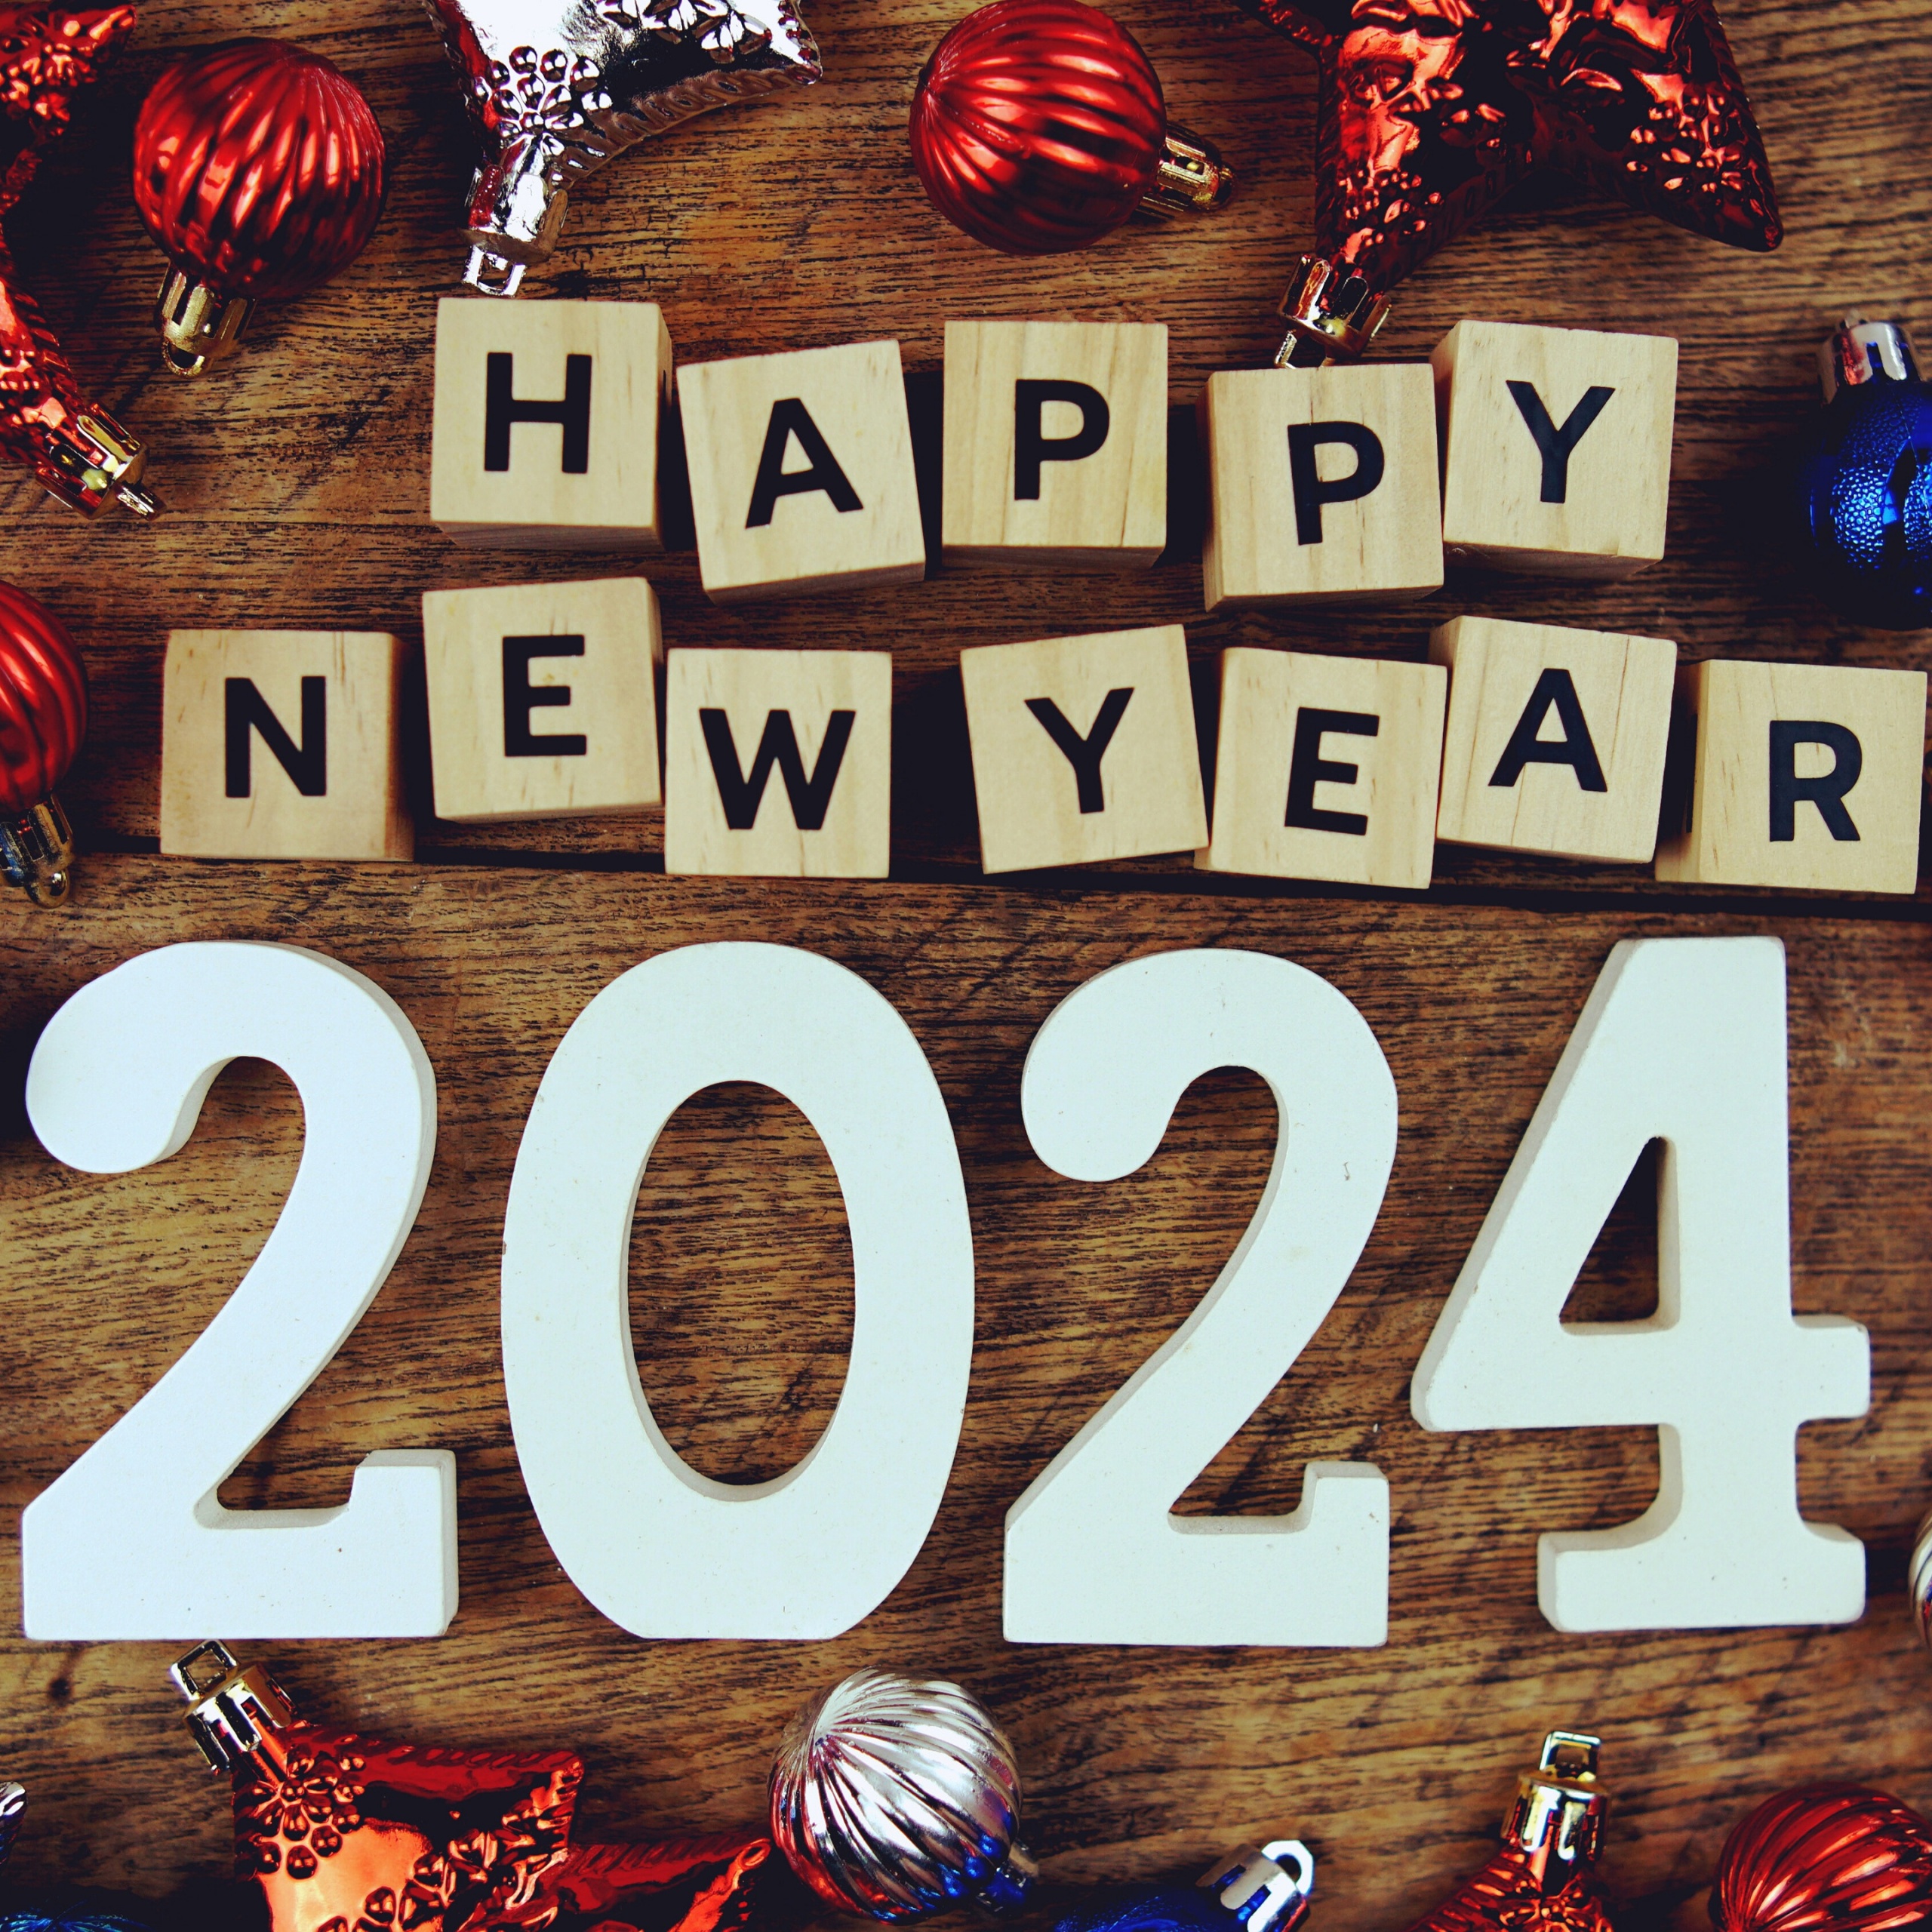 ઓડિટોરિયમ બેઠક, સિનેમા બેઠક અને શાળા ફર્નિચર માટેની મહત્વાકાંક્ષી યોજનાઓ સાથે વસંત ફર્નિચર 2024 ની શરૂઆત કરે છે